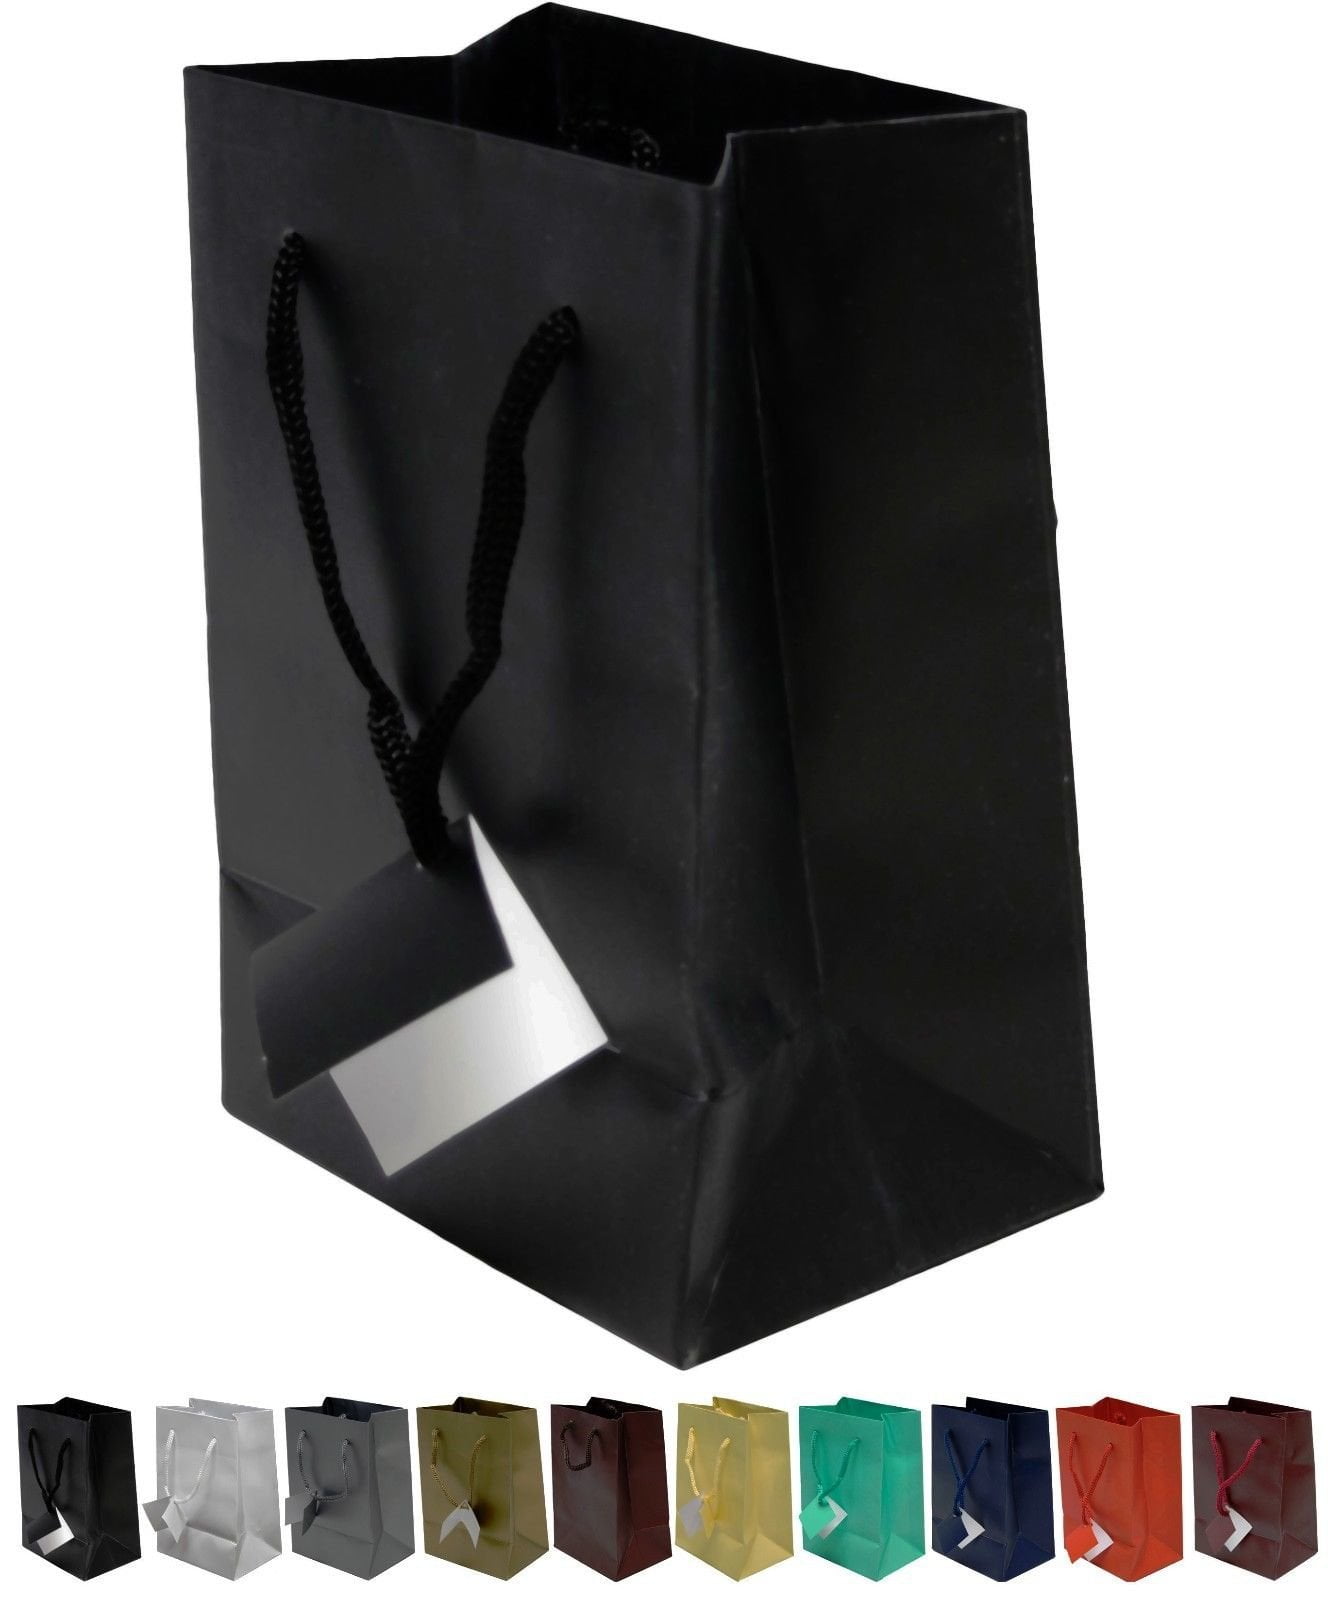 Purple Matt Laminated Landscape Boutique Shop Gift Bags Strong Bag & Tissue